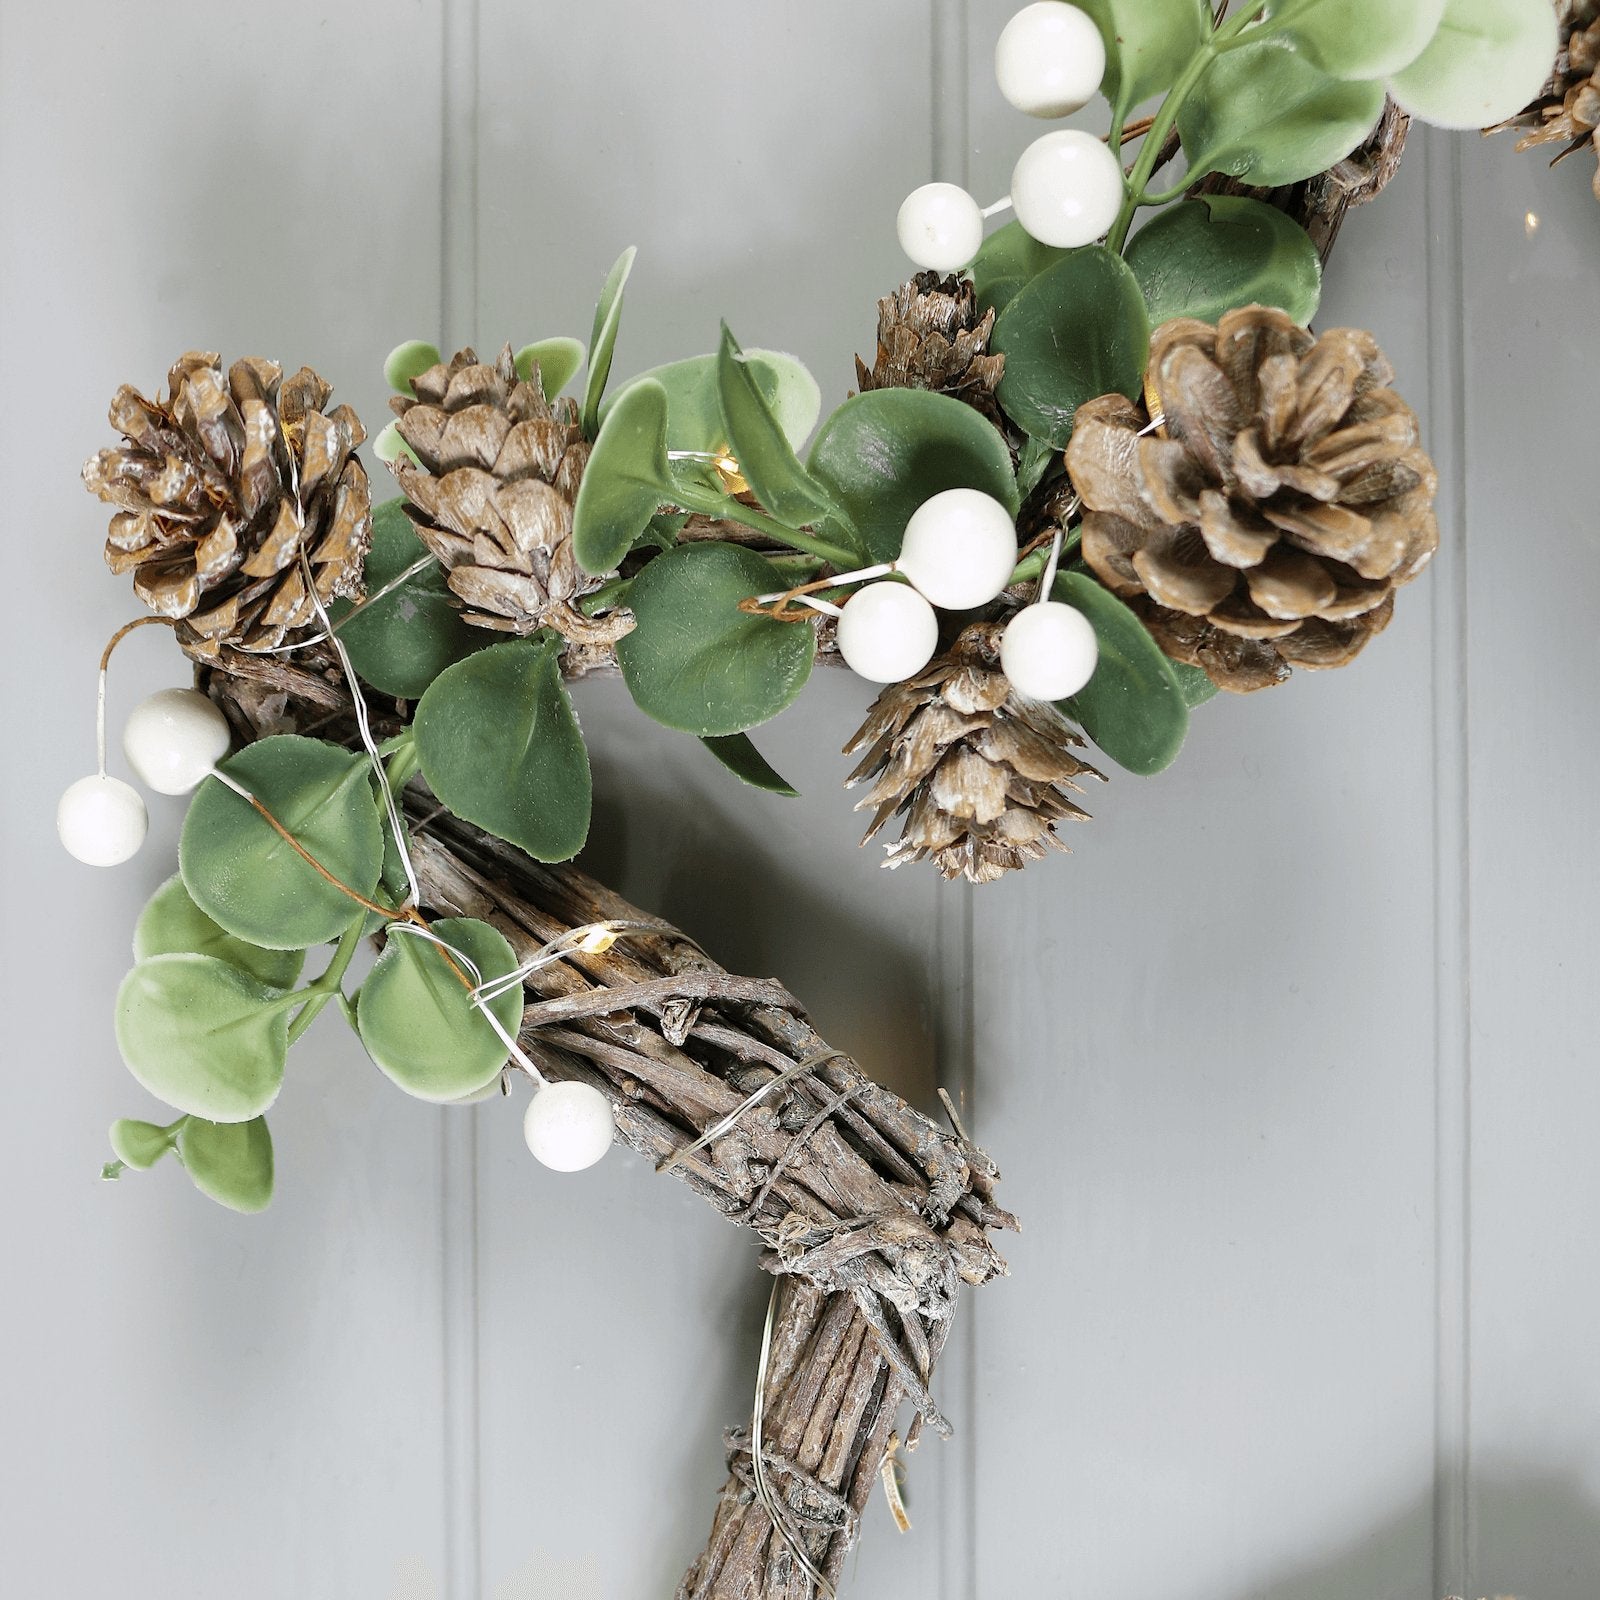 Mr Crimbo 30cm Twig Star Shaped Christmas Wreath Pine Cones - MrCrimbo.co.uk -XS7614 - -